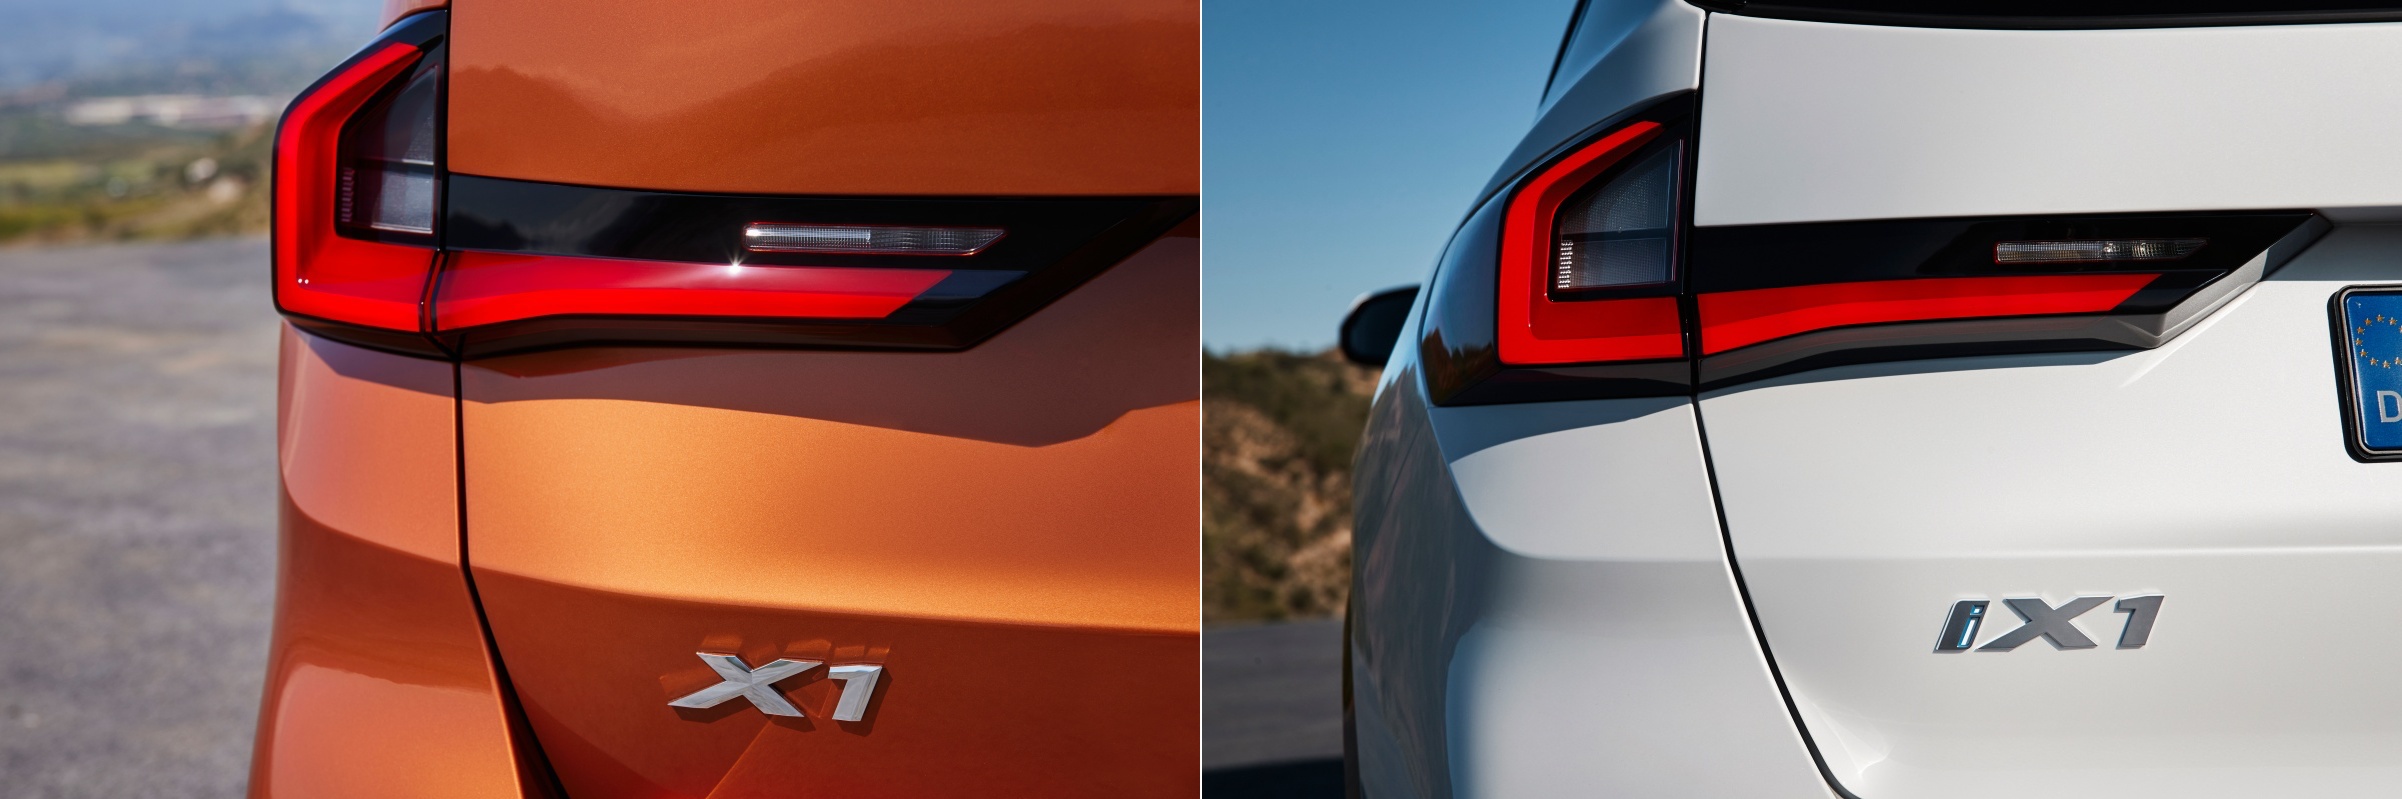 'BMW X1'과 'BMW iX1'의 차체 사진. 두 차량의 모양 면에서는 고민할 이유가 없으며, 본인에게 맞는 차량 형태를 고르면 된다.